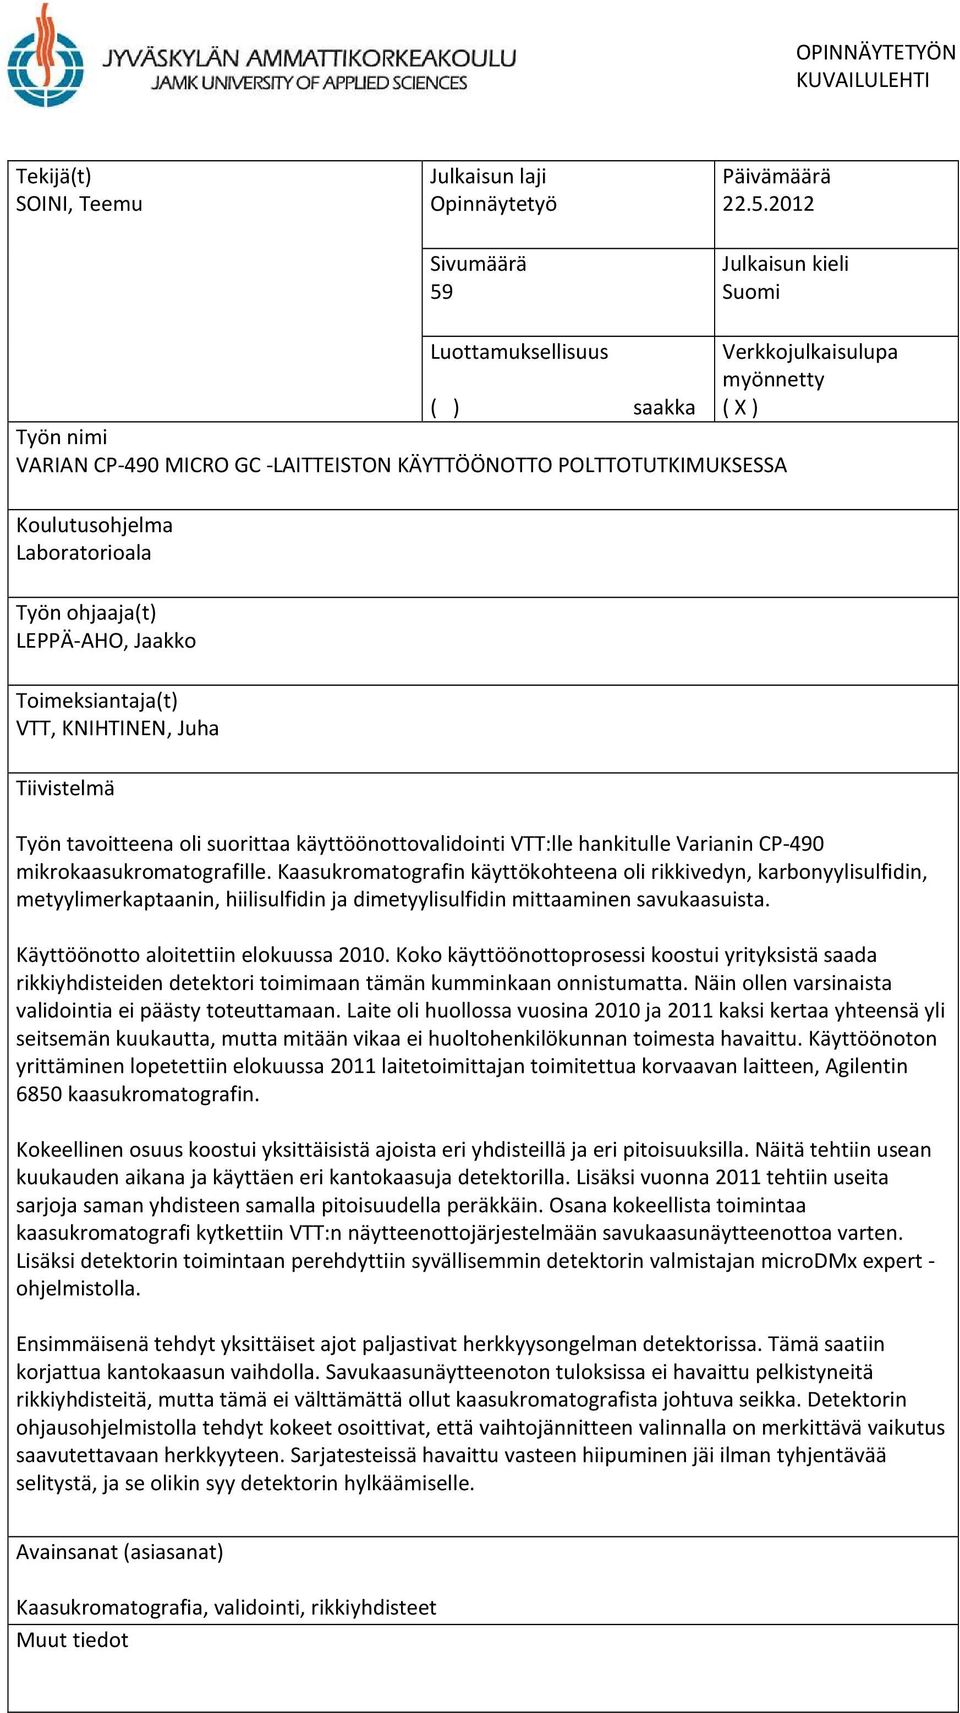 2012 Julkaisun kieli Suomi Luottamuksellisuus Verkkojulkaisulupa ( ) saakka myönnetty ( X ) Työn nimi VARIAN CP-490 MICRO GC -LAITTEISTON KÄYTTÖÖNOTTO POLTTOTUTKIMUKSESSA Koulutusohjelma